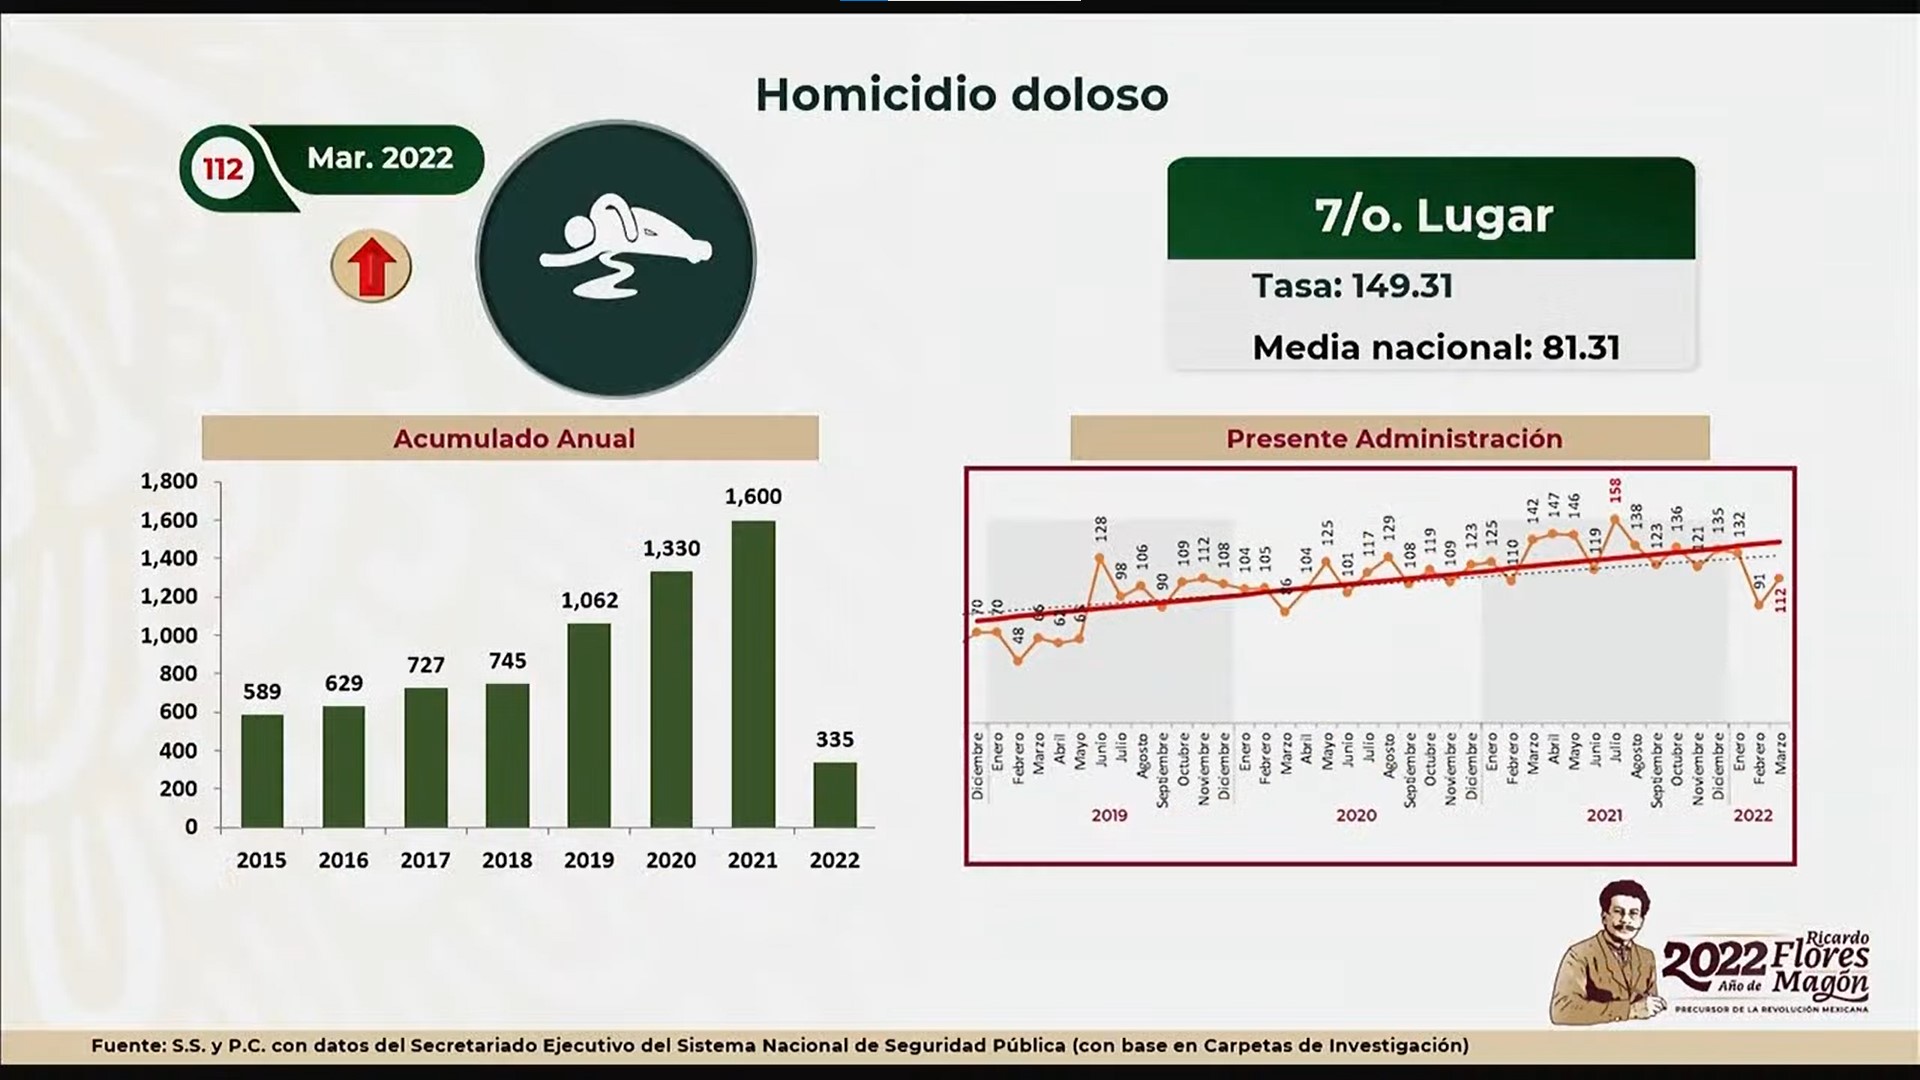 Registro de homicidios dolosos en el estado de Sonora, México, de diciembre de 2018 a marzo de 2022. Foto: Gobierno de México